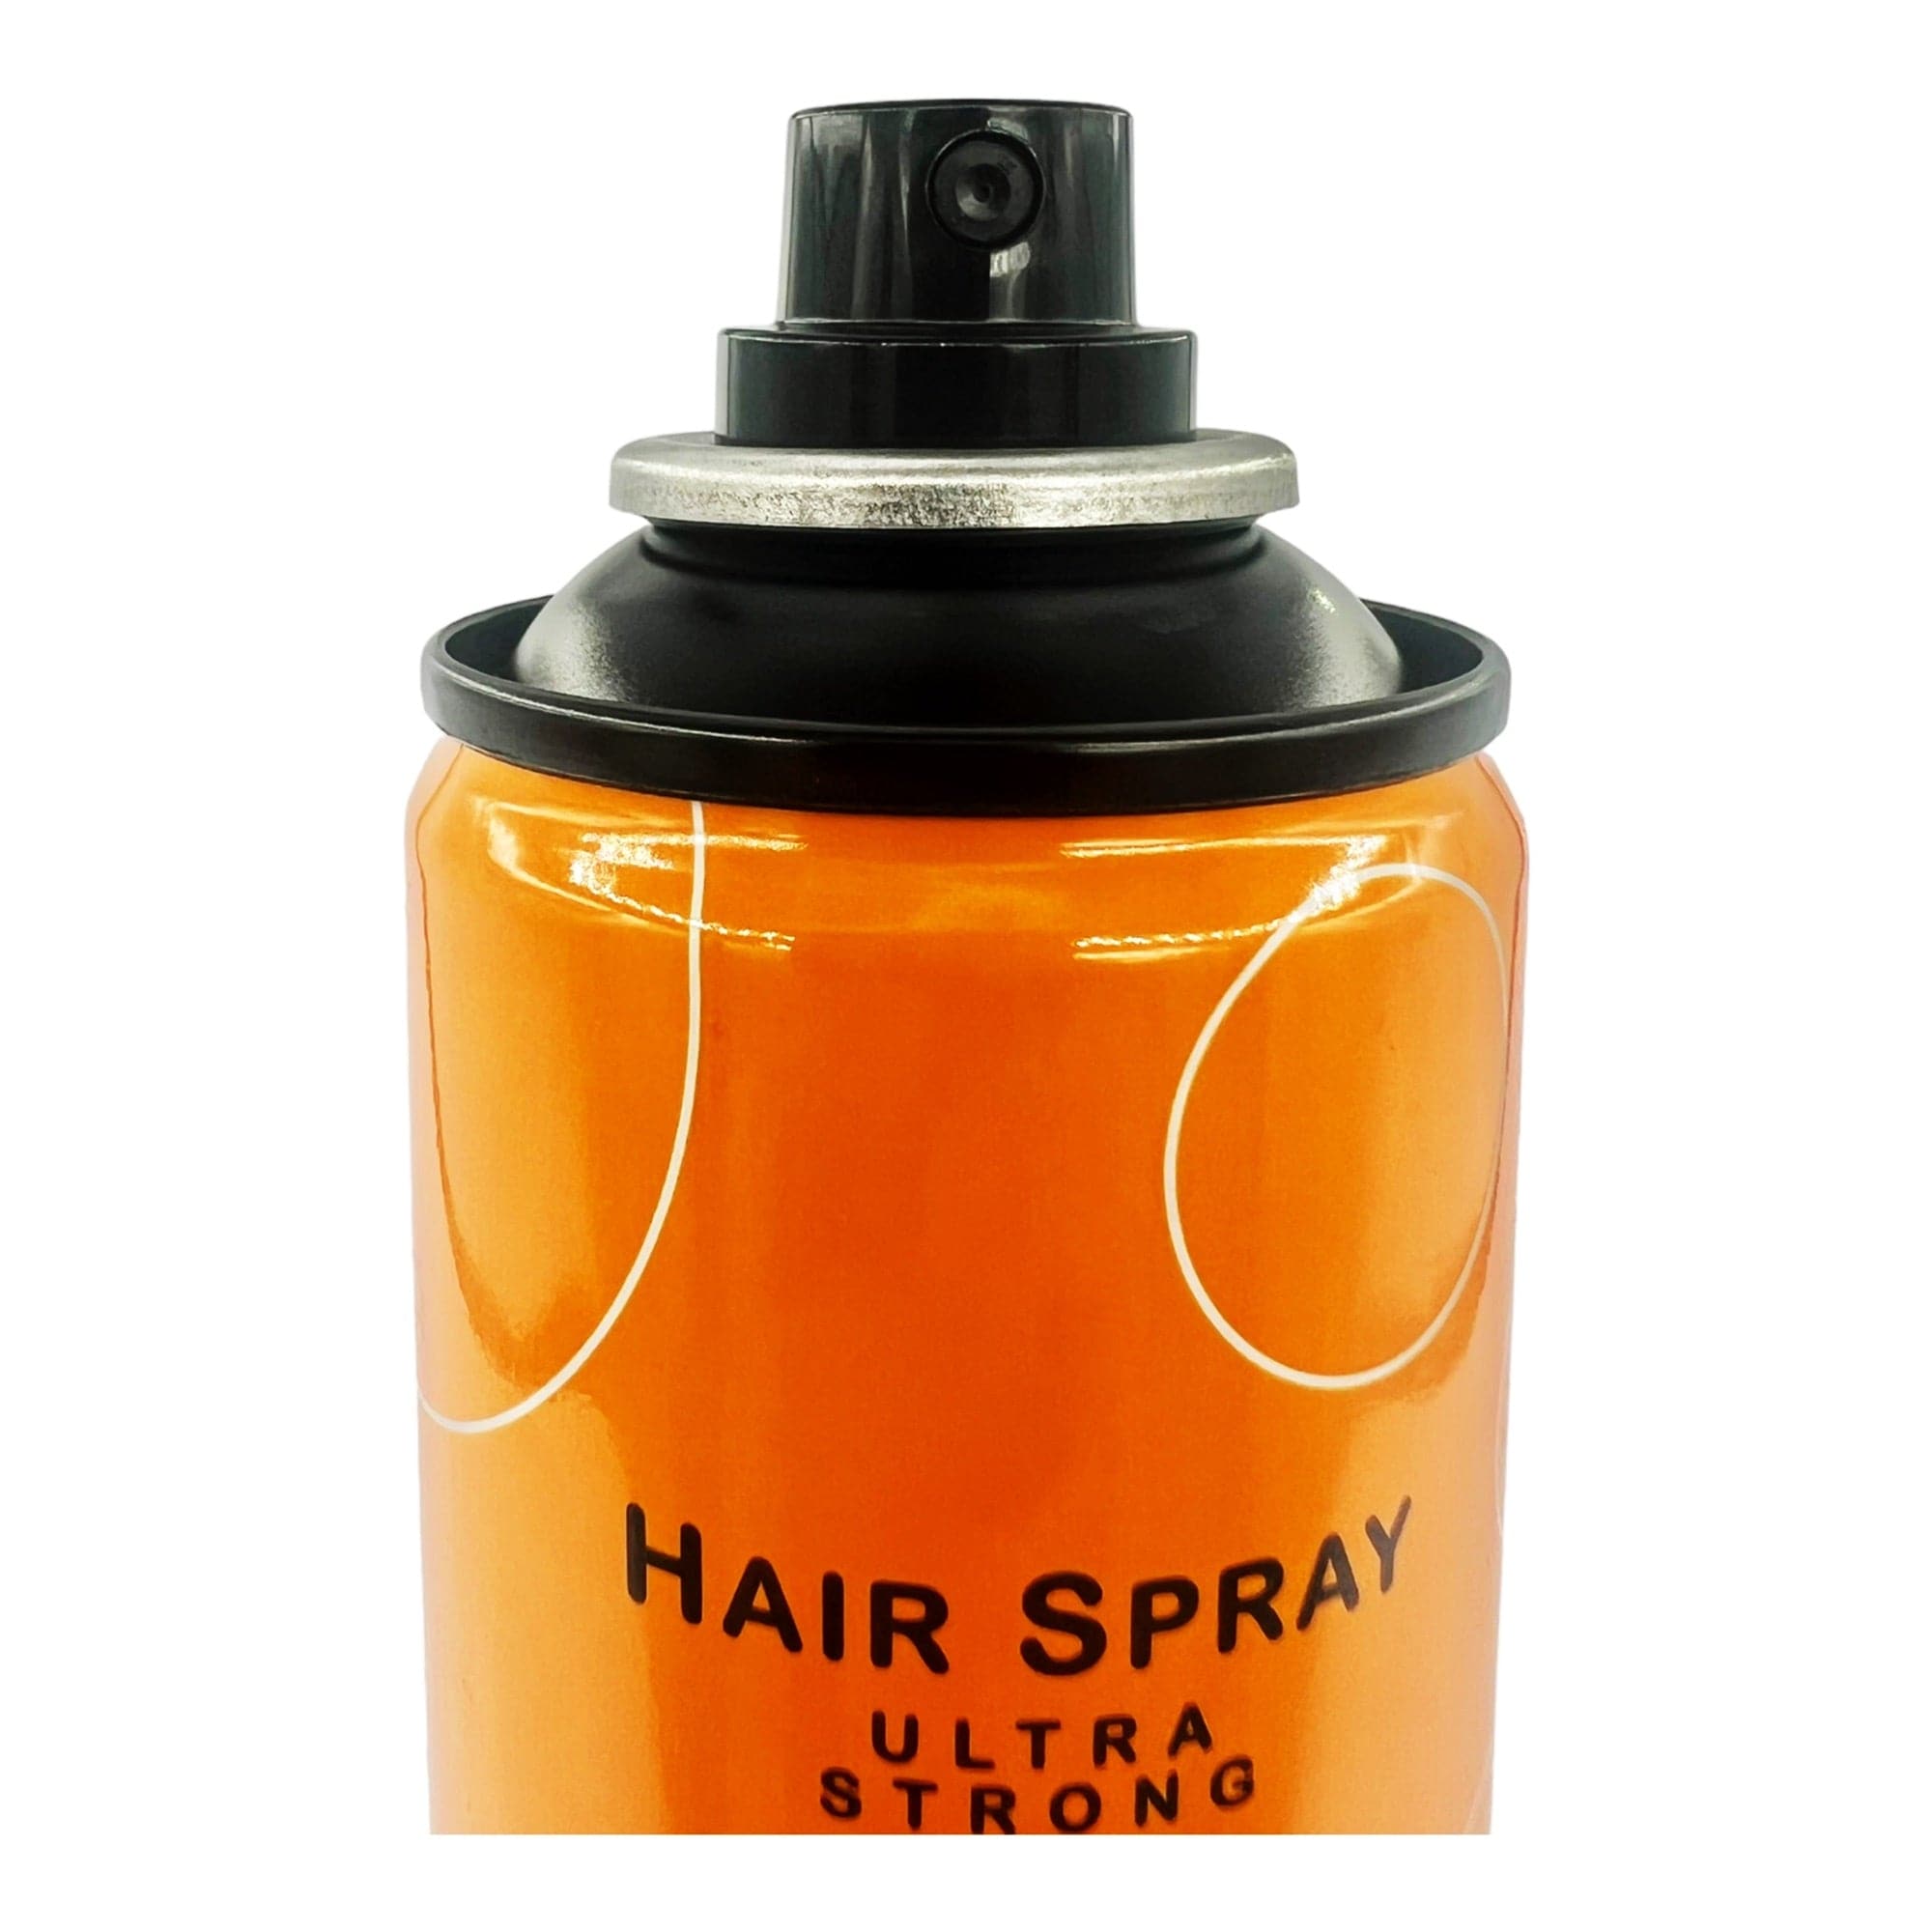 Morfose - Hair Spray Ultra Strong with Argan Oil 300ml